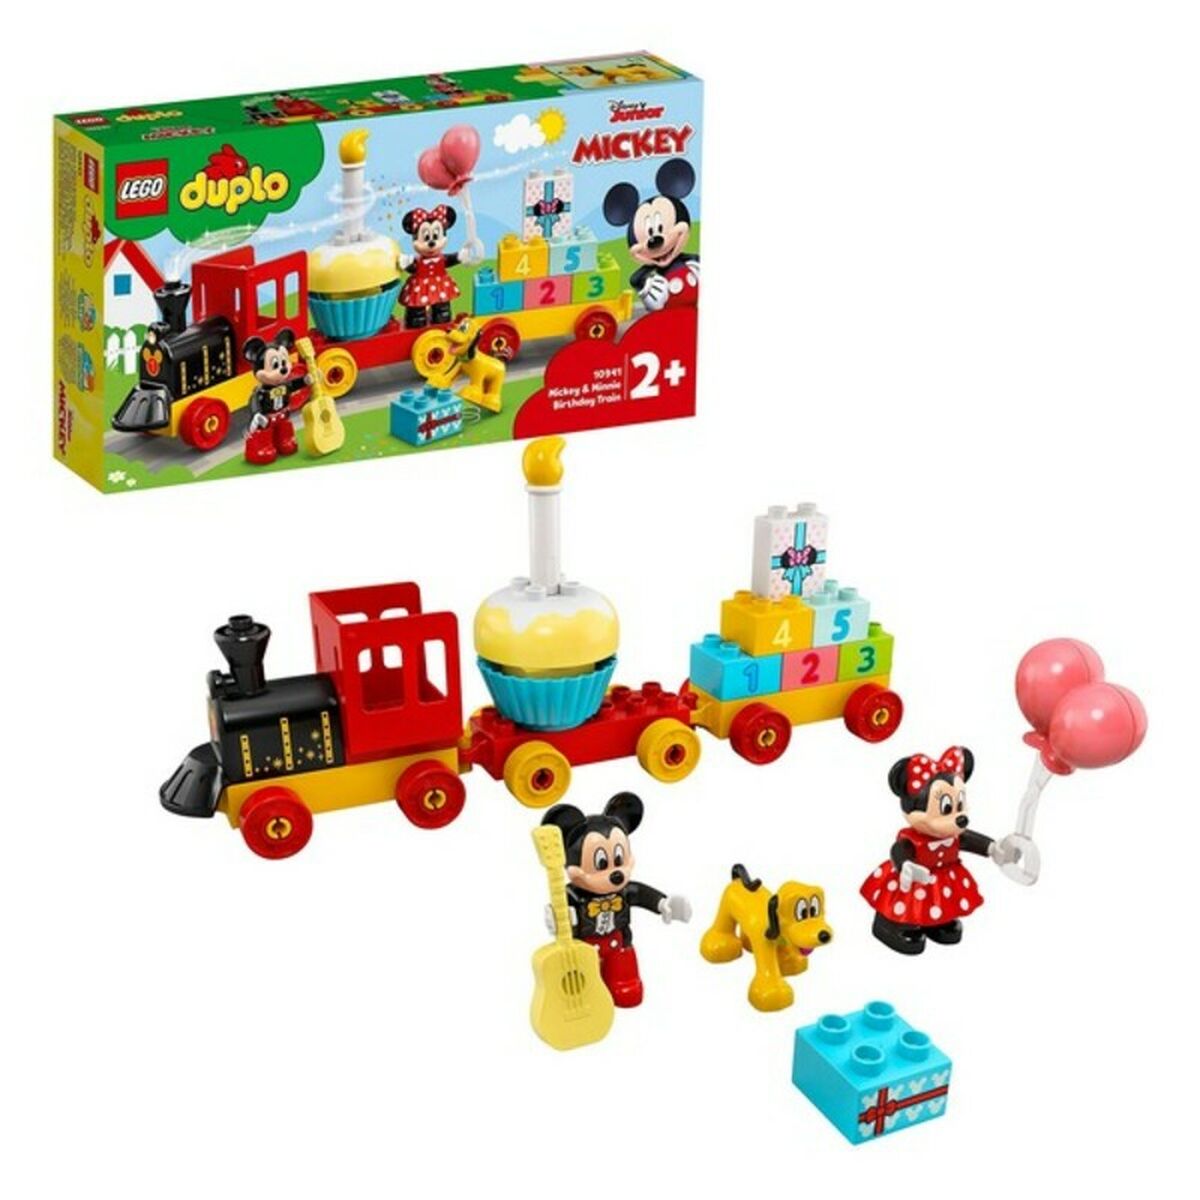 Playset Duplo Mickey y Minnie Birthday Train Lego 10941